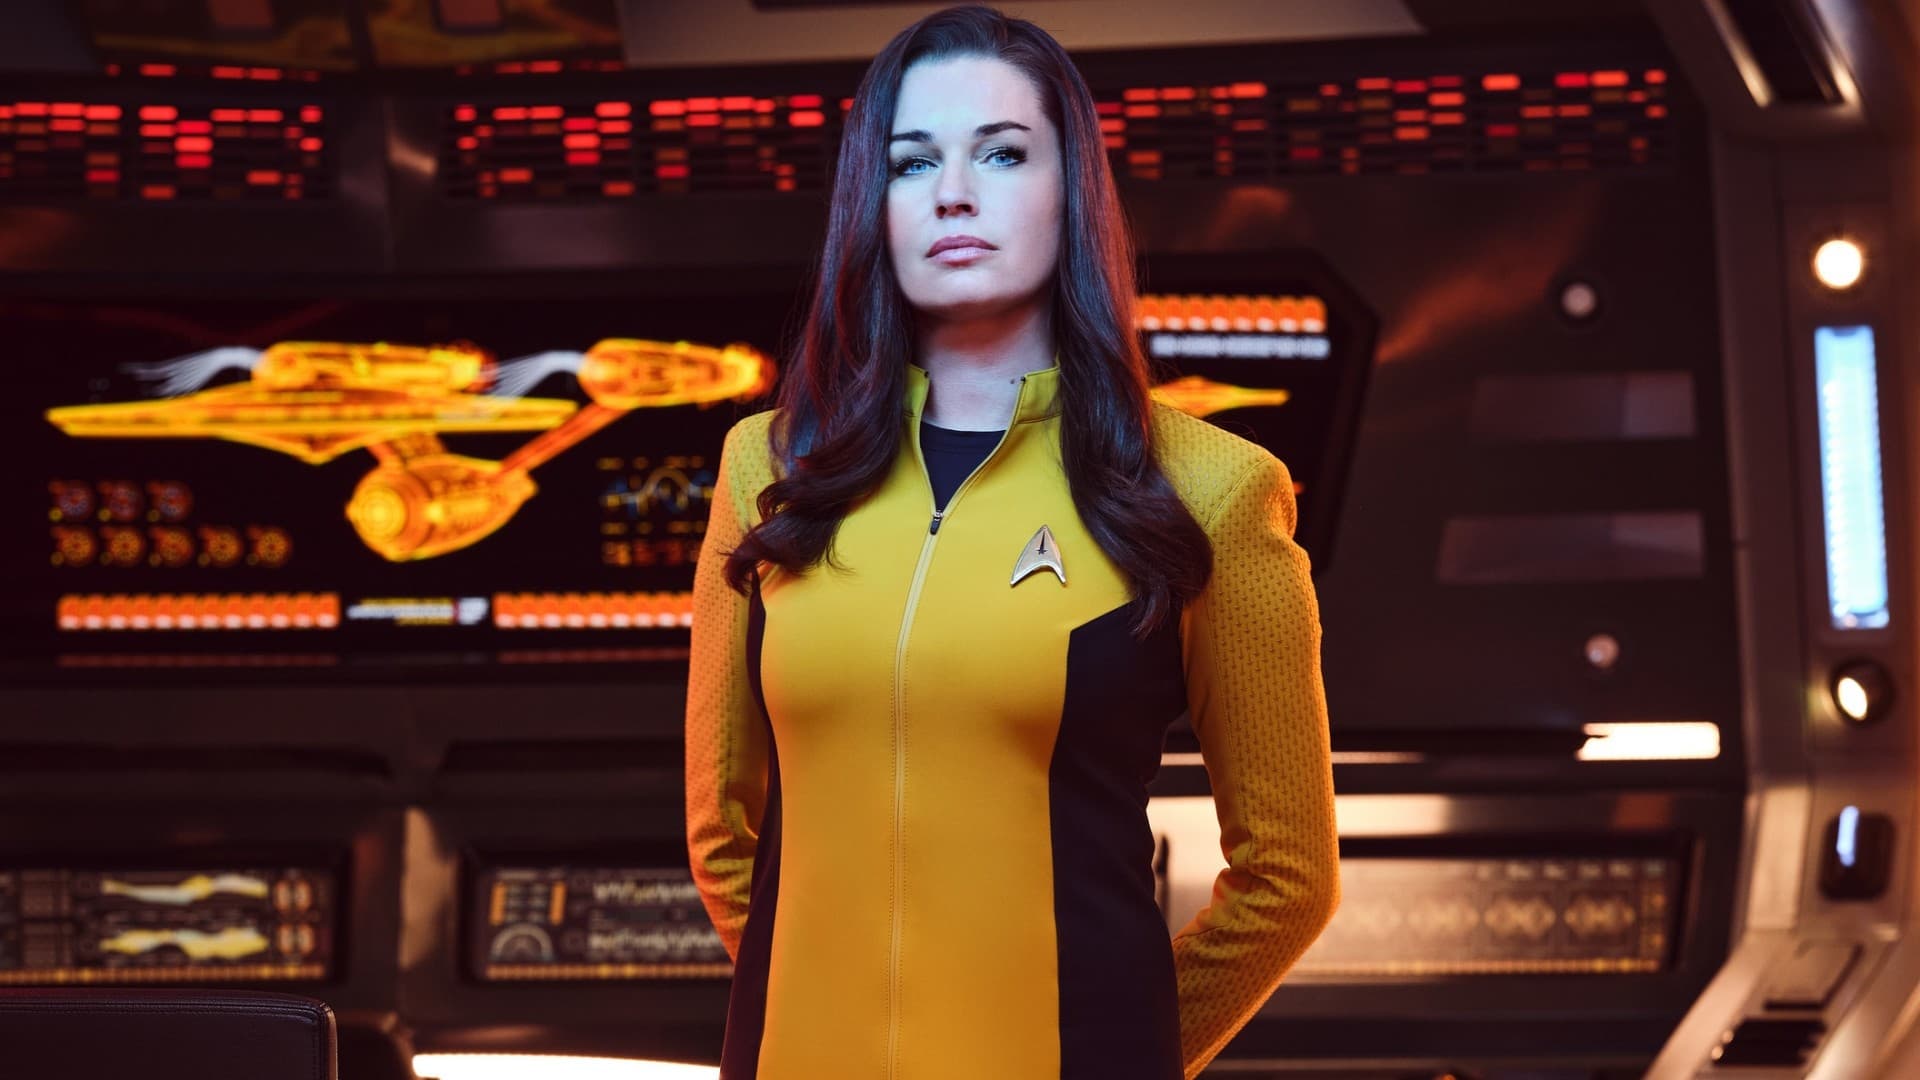 Star Trek: Furcsa új világok - Season 1 Episode 6